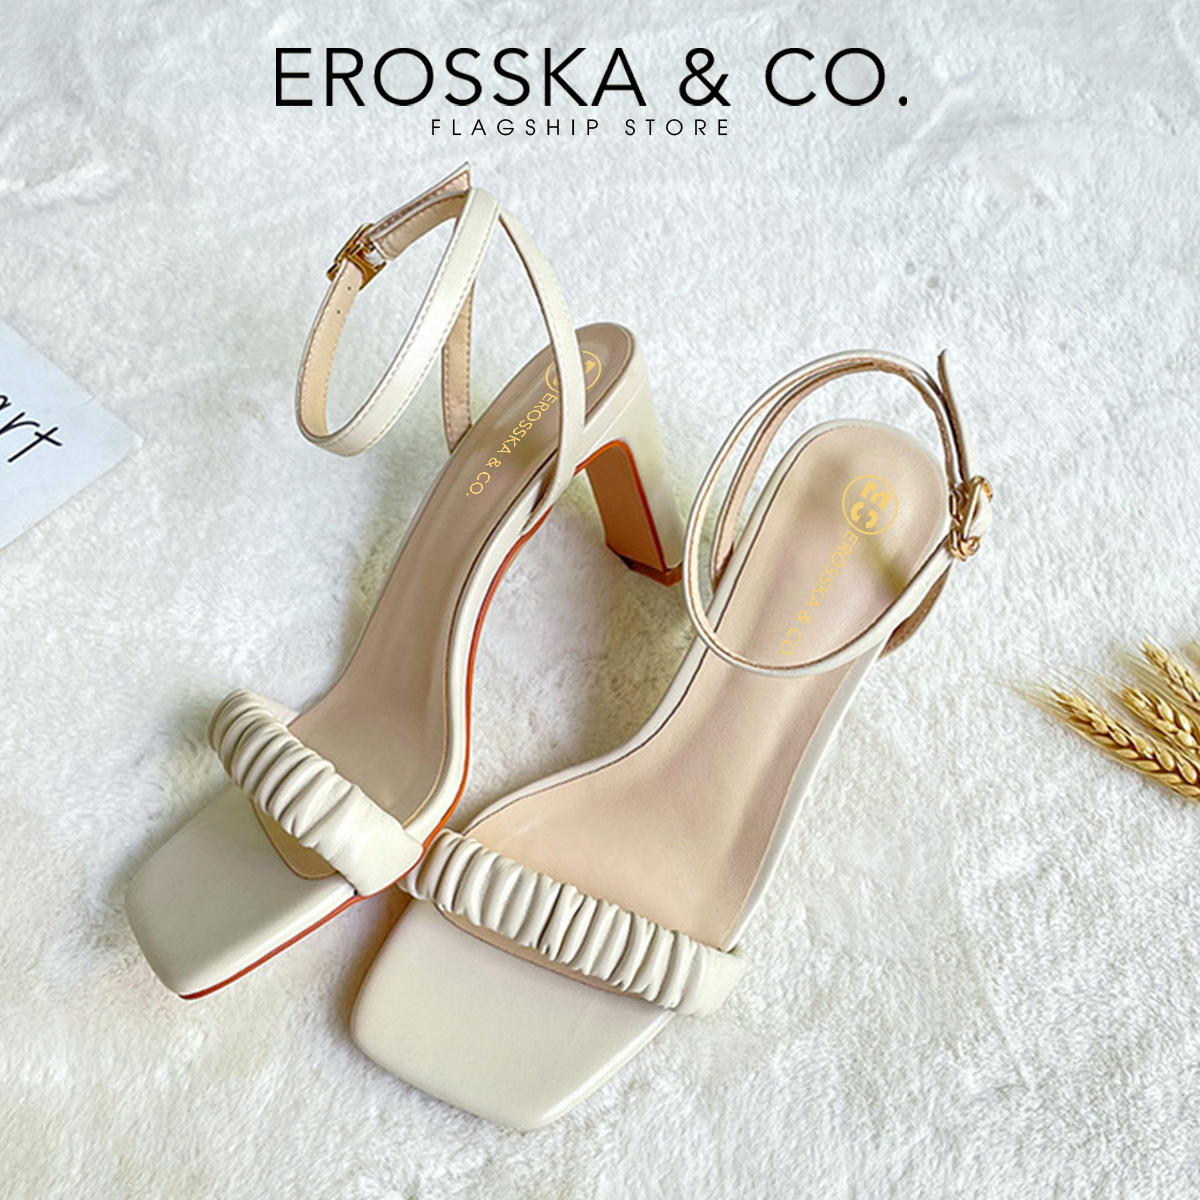 Erosska - Giày sandal cao gót nữ mũi vuông quai nhún cao 8cm màu đen - EB044